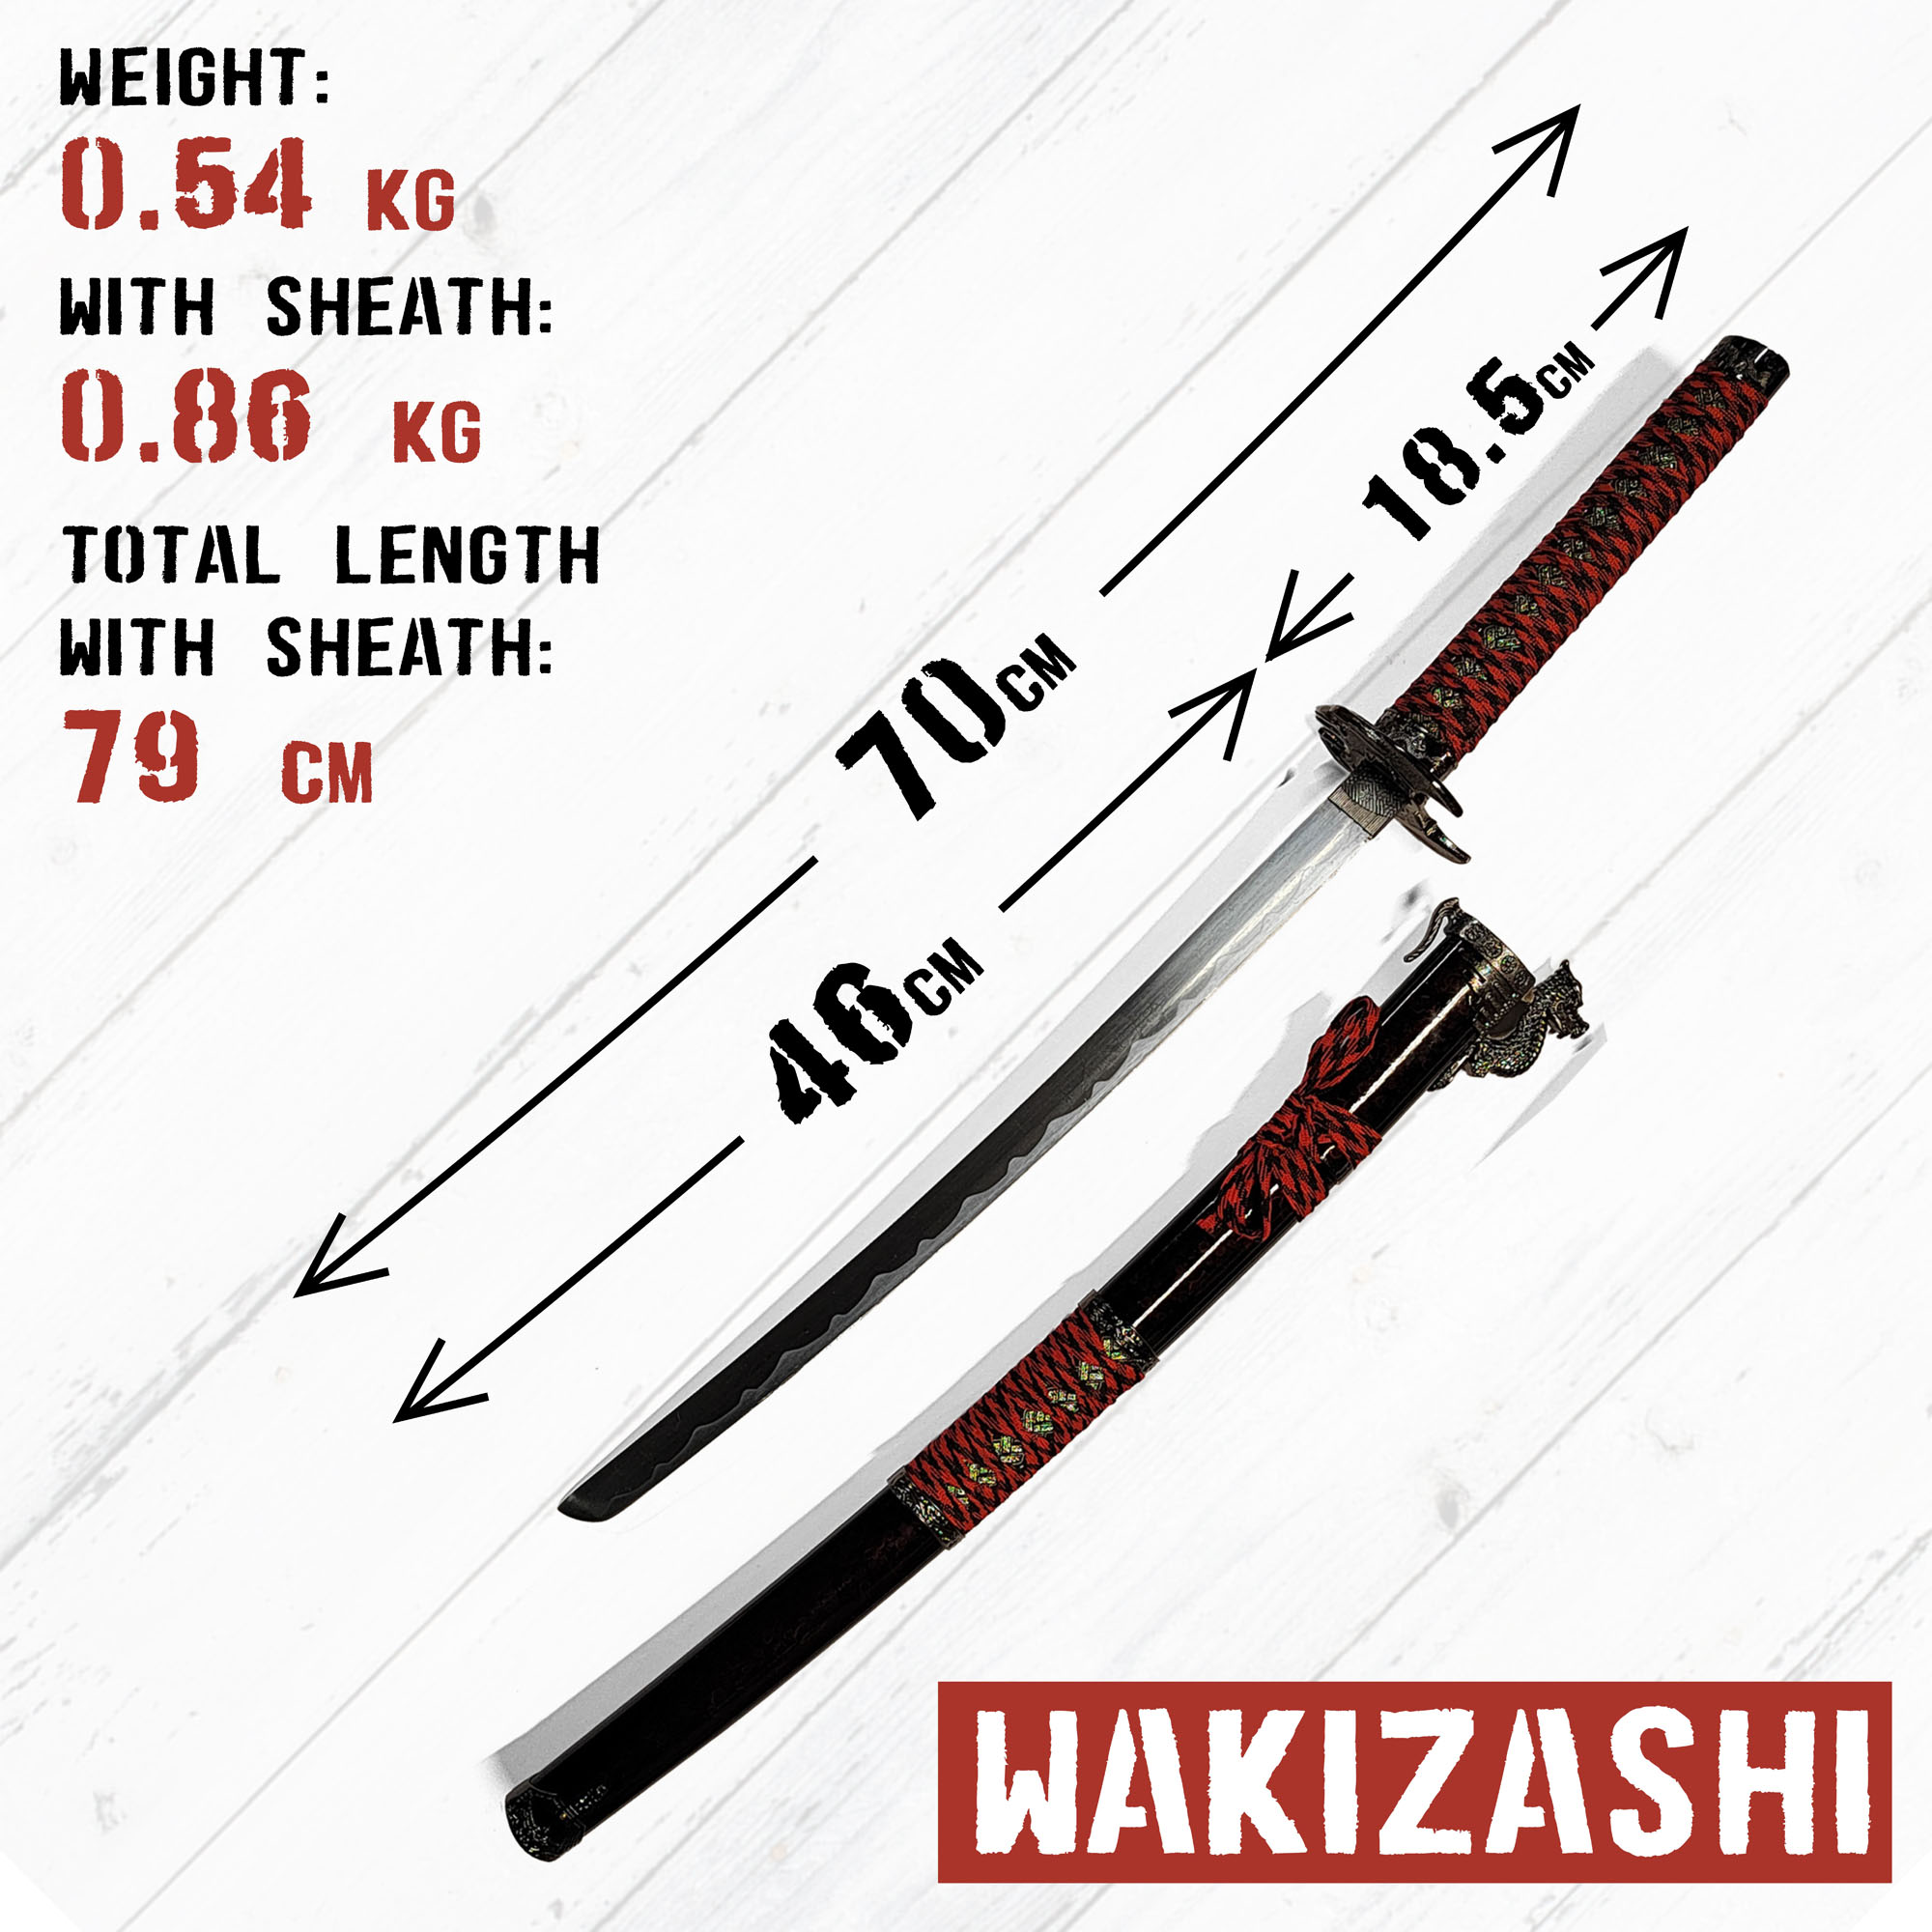 Samurai Sword Set of 3 with Stand - Dragon (Katana, Wakizashi and Tanto)